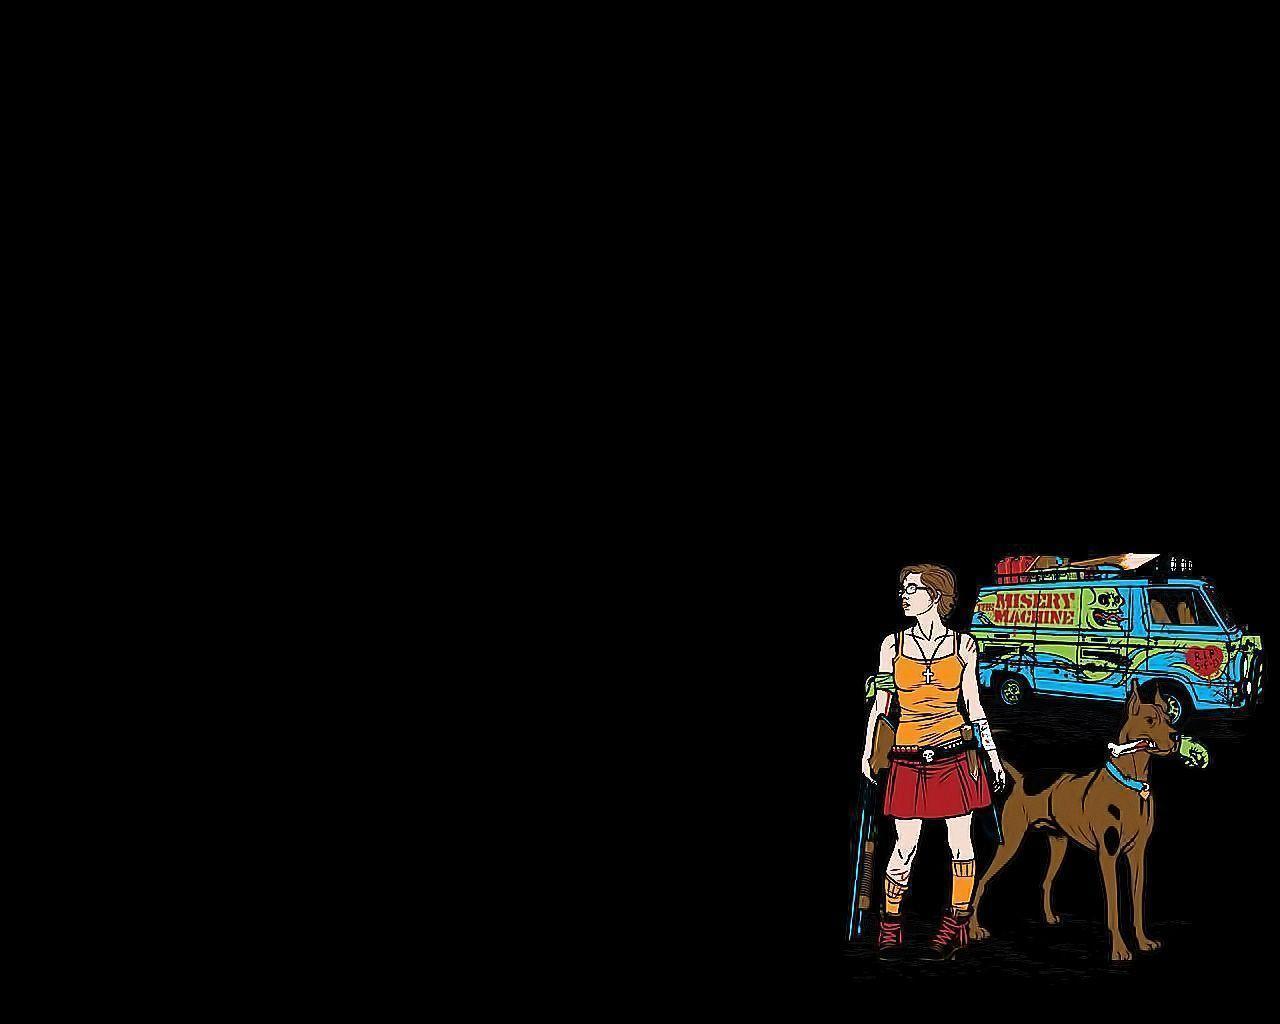 Scooby Doo Computer Wallpaper, Desktop Background 1280x1024 Id